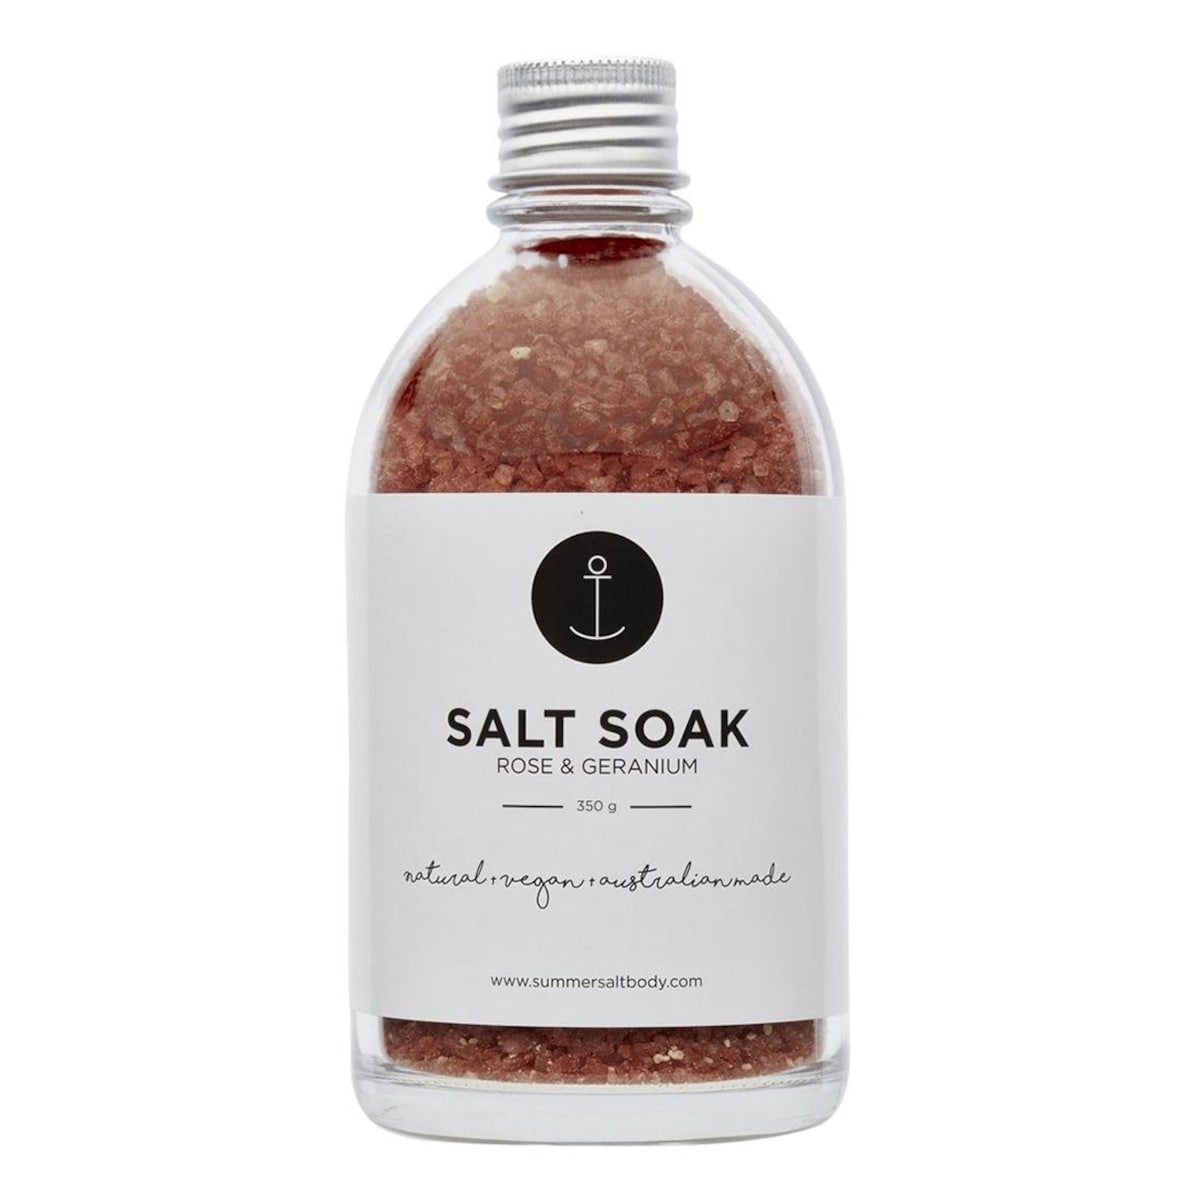 SUMMER SALT BODY Salt Soak Rose & Geranium 350g